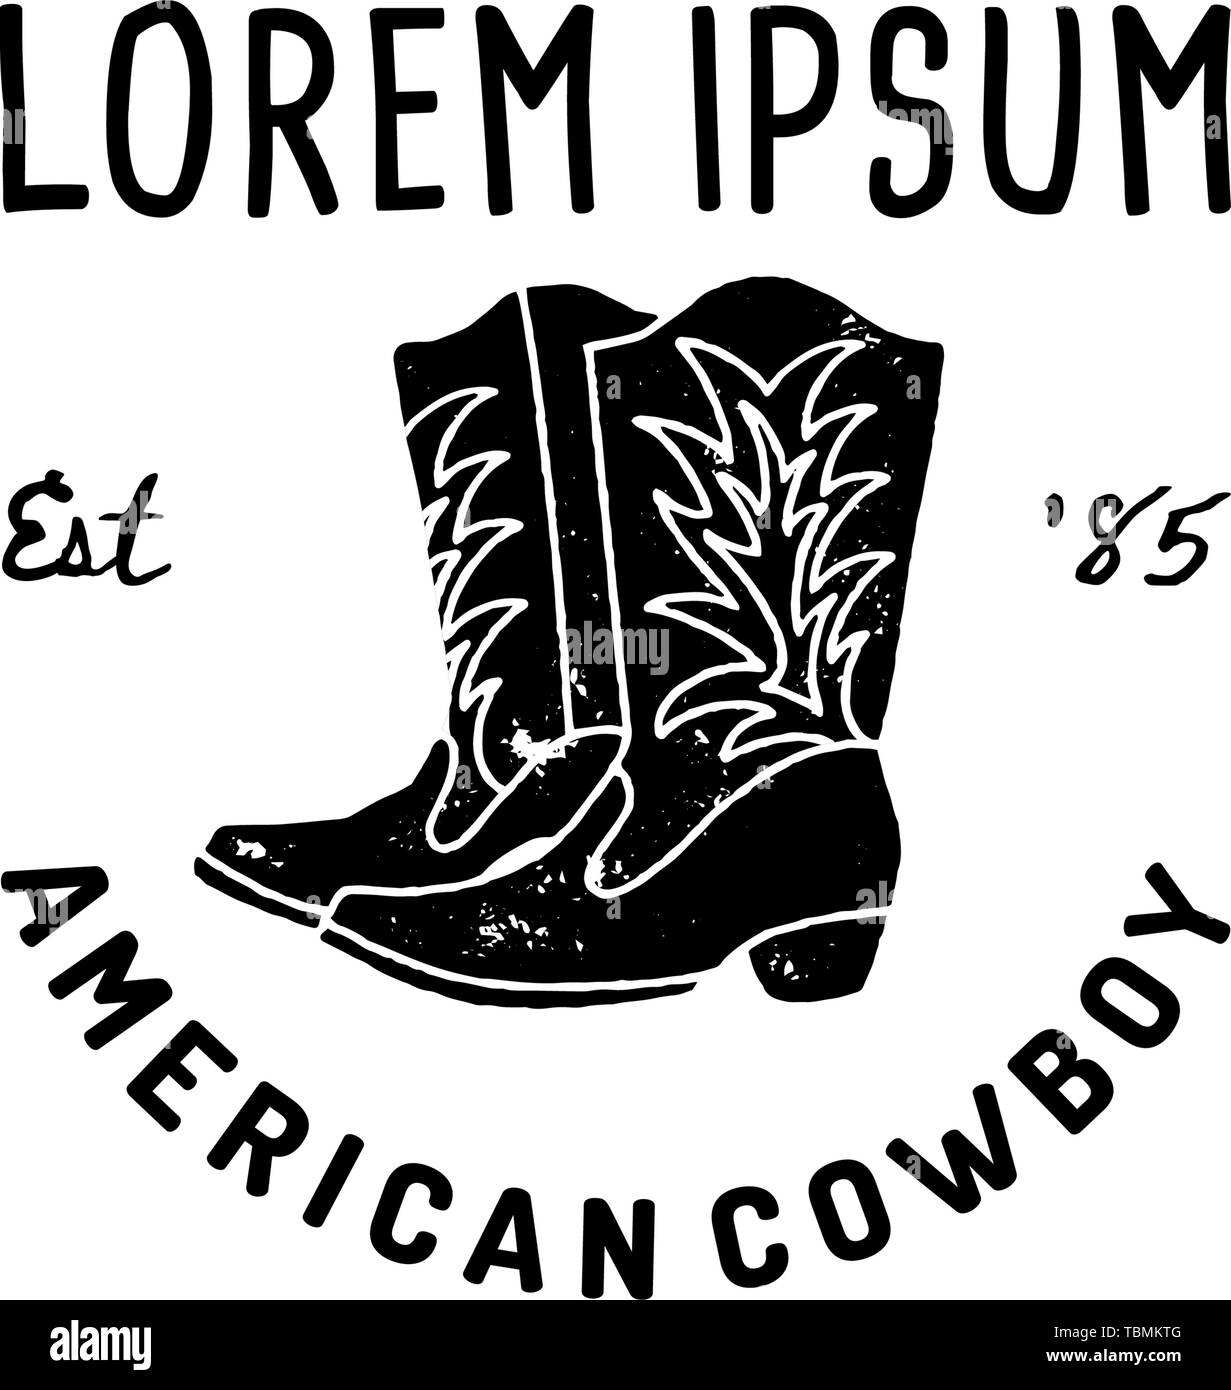 Logo de l'Ouest American cowboy boots part attirer Grunge style. Le symbole Wild West chanter d'un cow-boy et Retro typographie. Vintage emblème pour imprimer, poster, t-shirt, couvrir, une bannière ou une autre entreprise Illustration de Vecteur